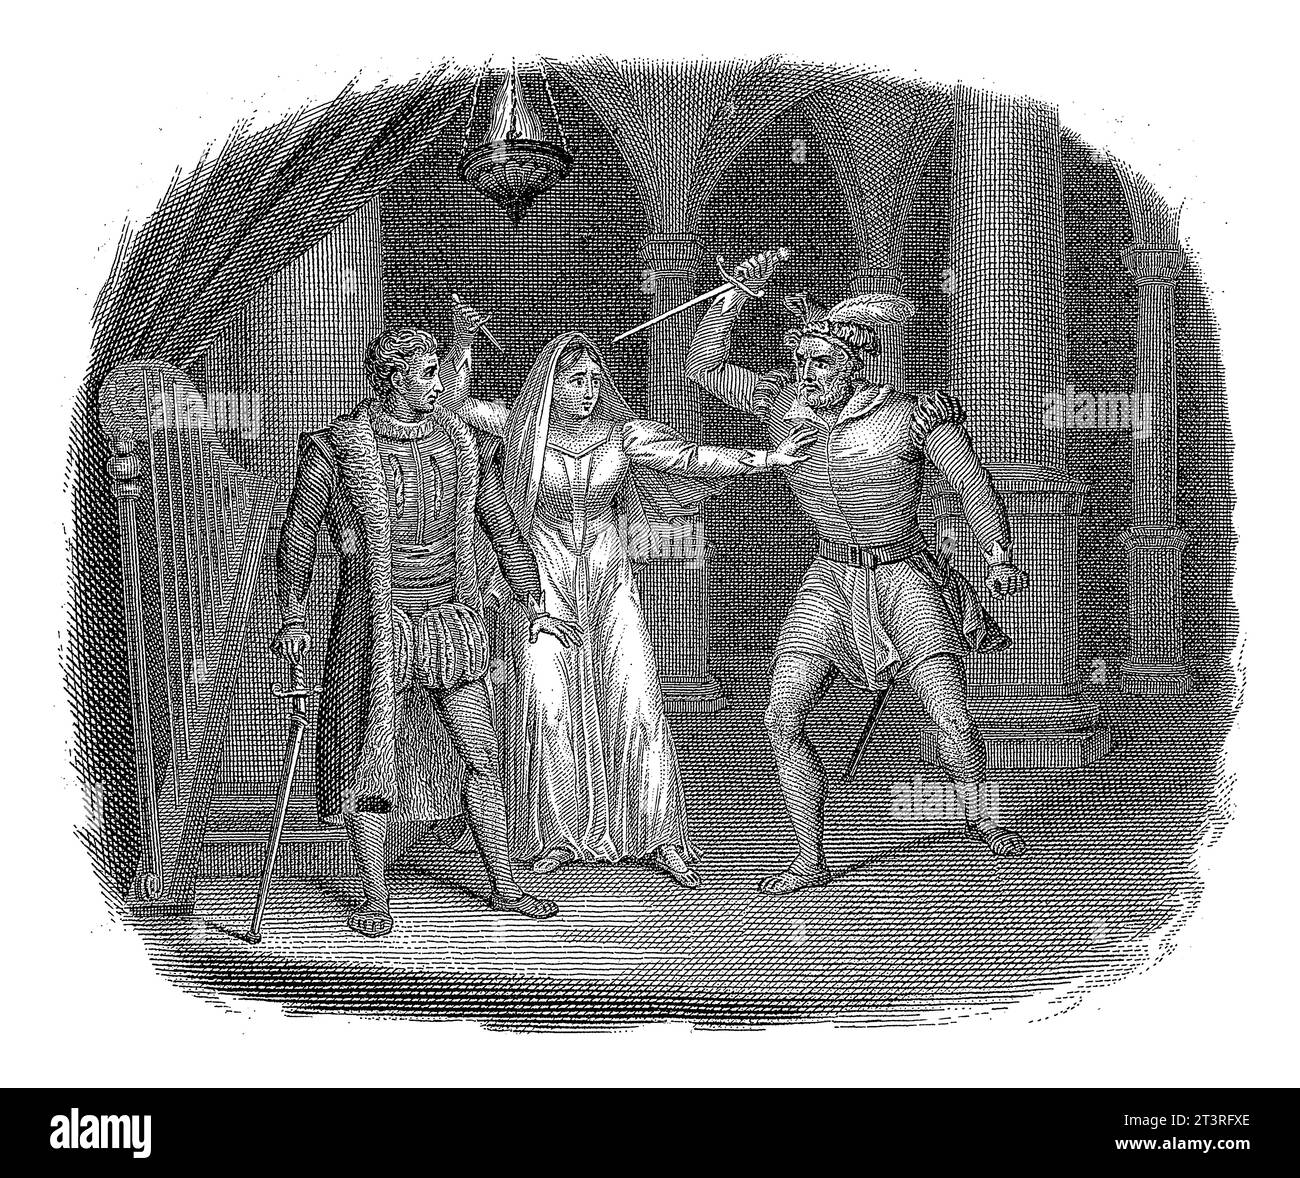 ELVIRE empêche Valeros de tuer Hugo, Walraad Nieuwhoff, après A. Bakker, 1831 ELVIRE, avec un poignard levé, arrête Valeros, qui tente de poignarder un cygne Banque D'Images